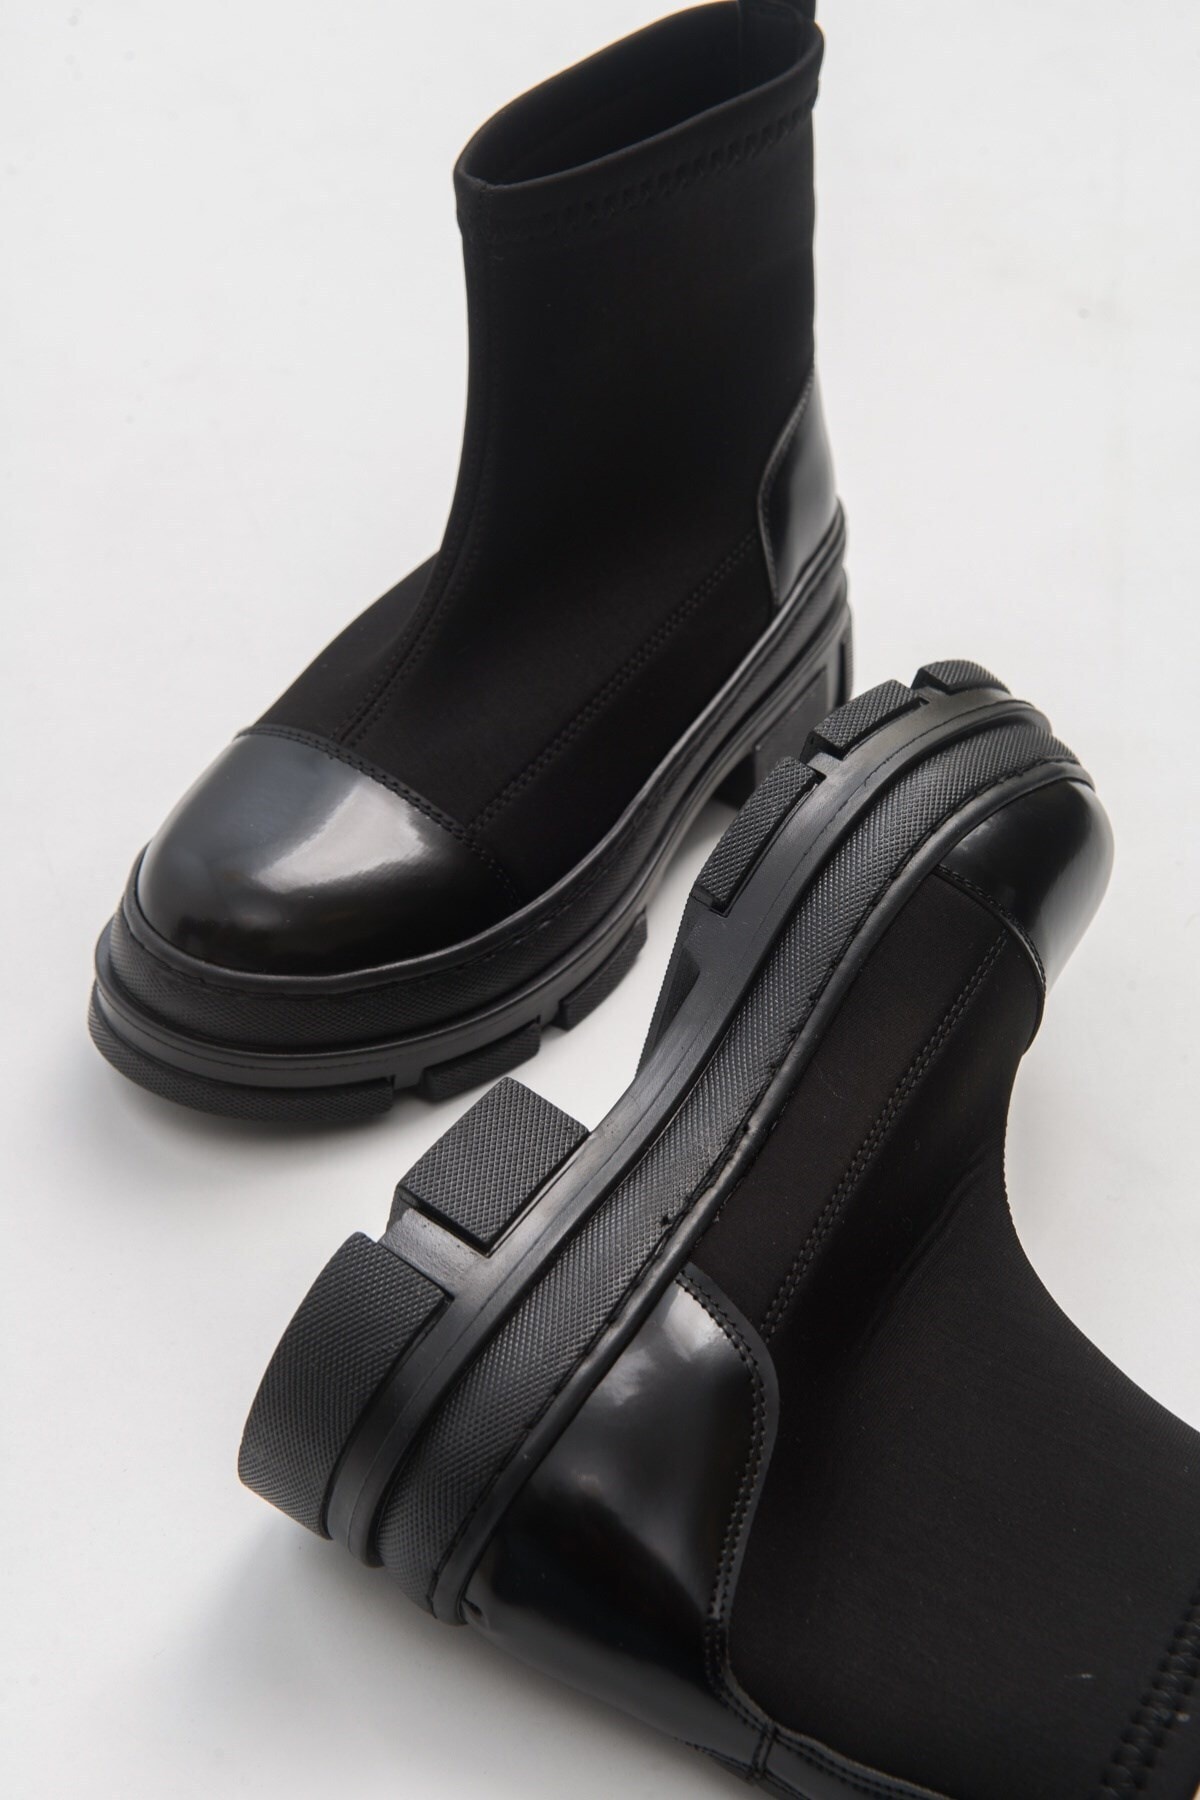 LuviShoes Bendis Women's Black Scuba Boots.